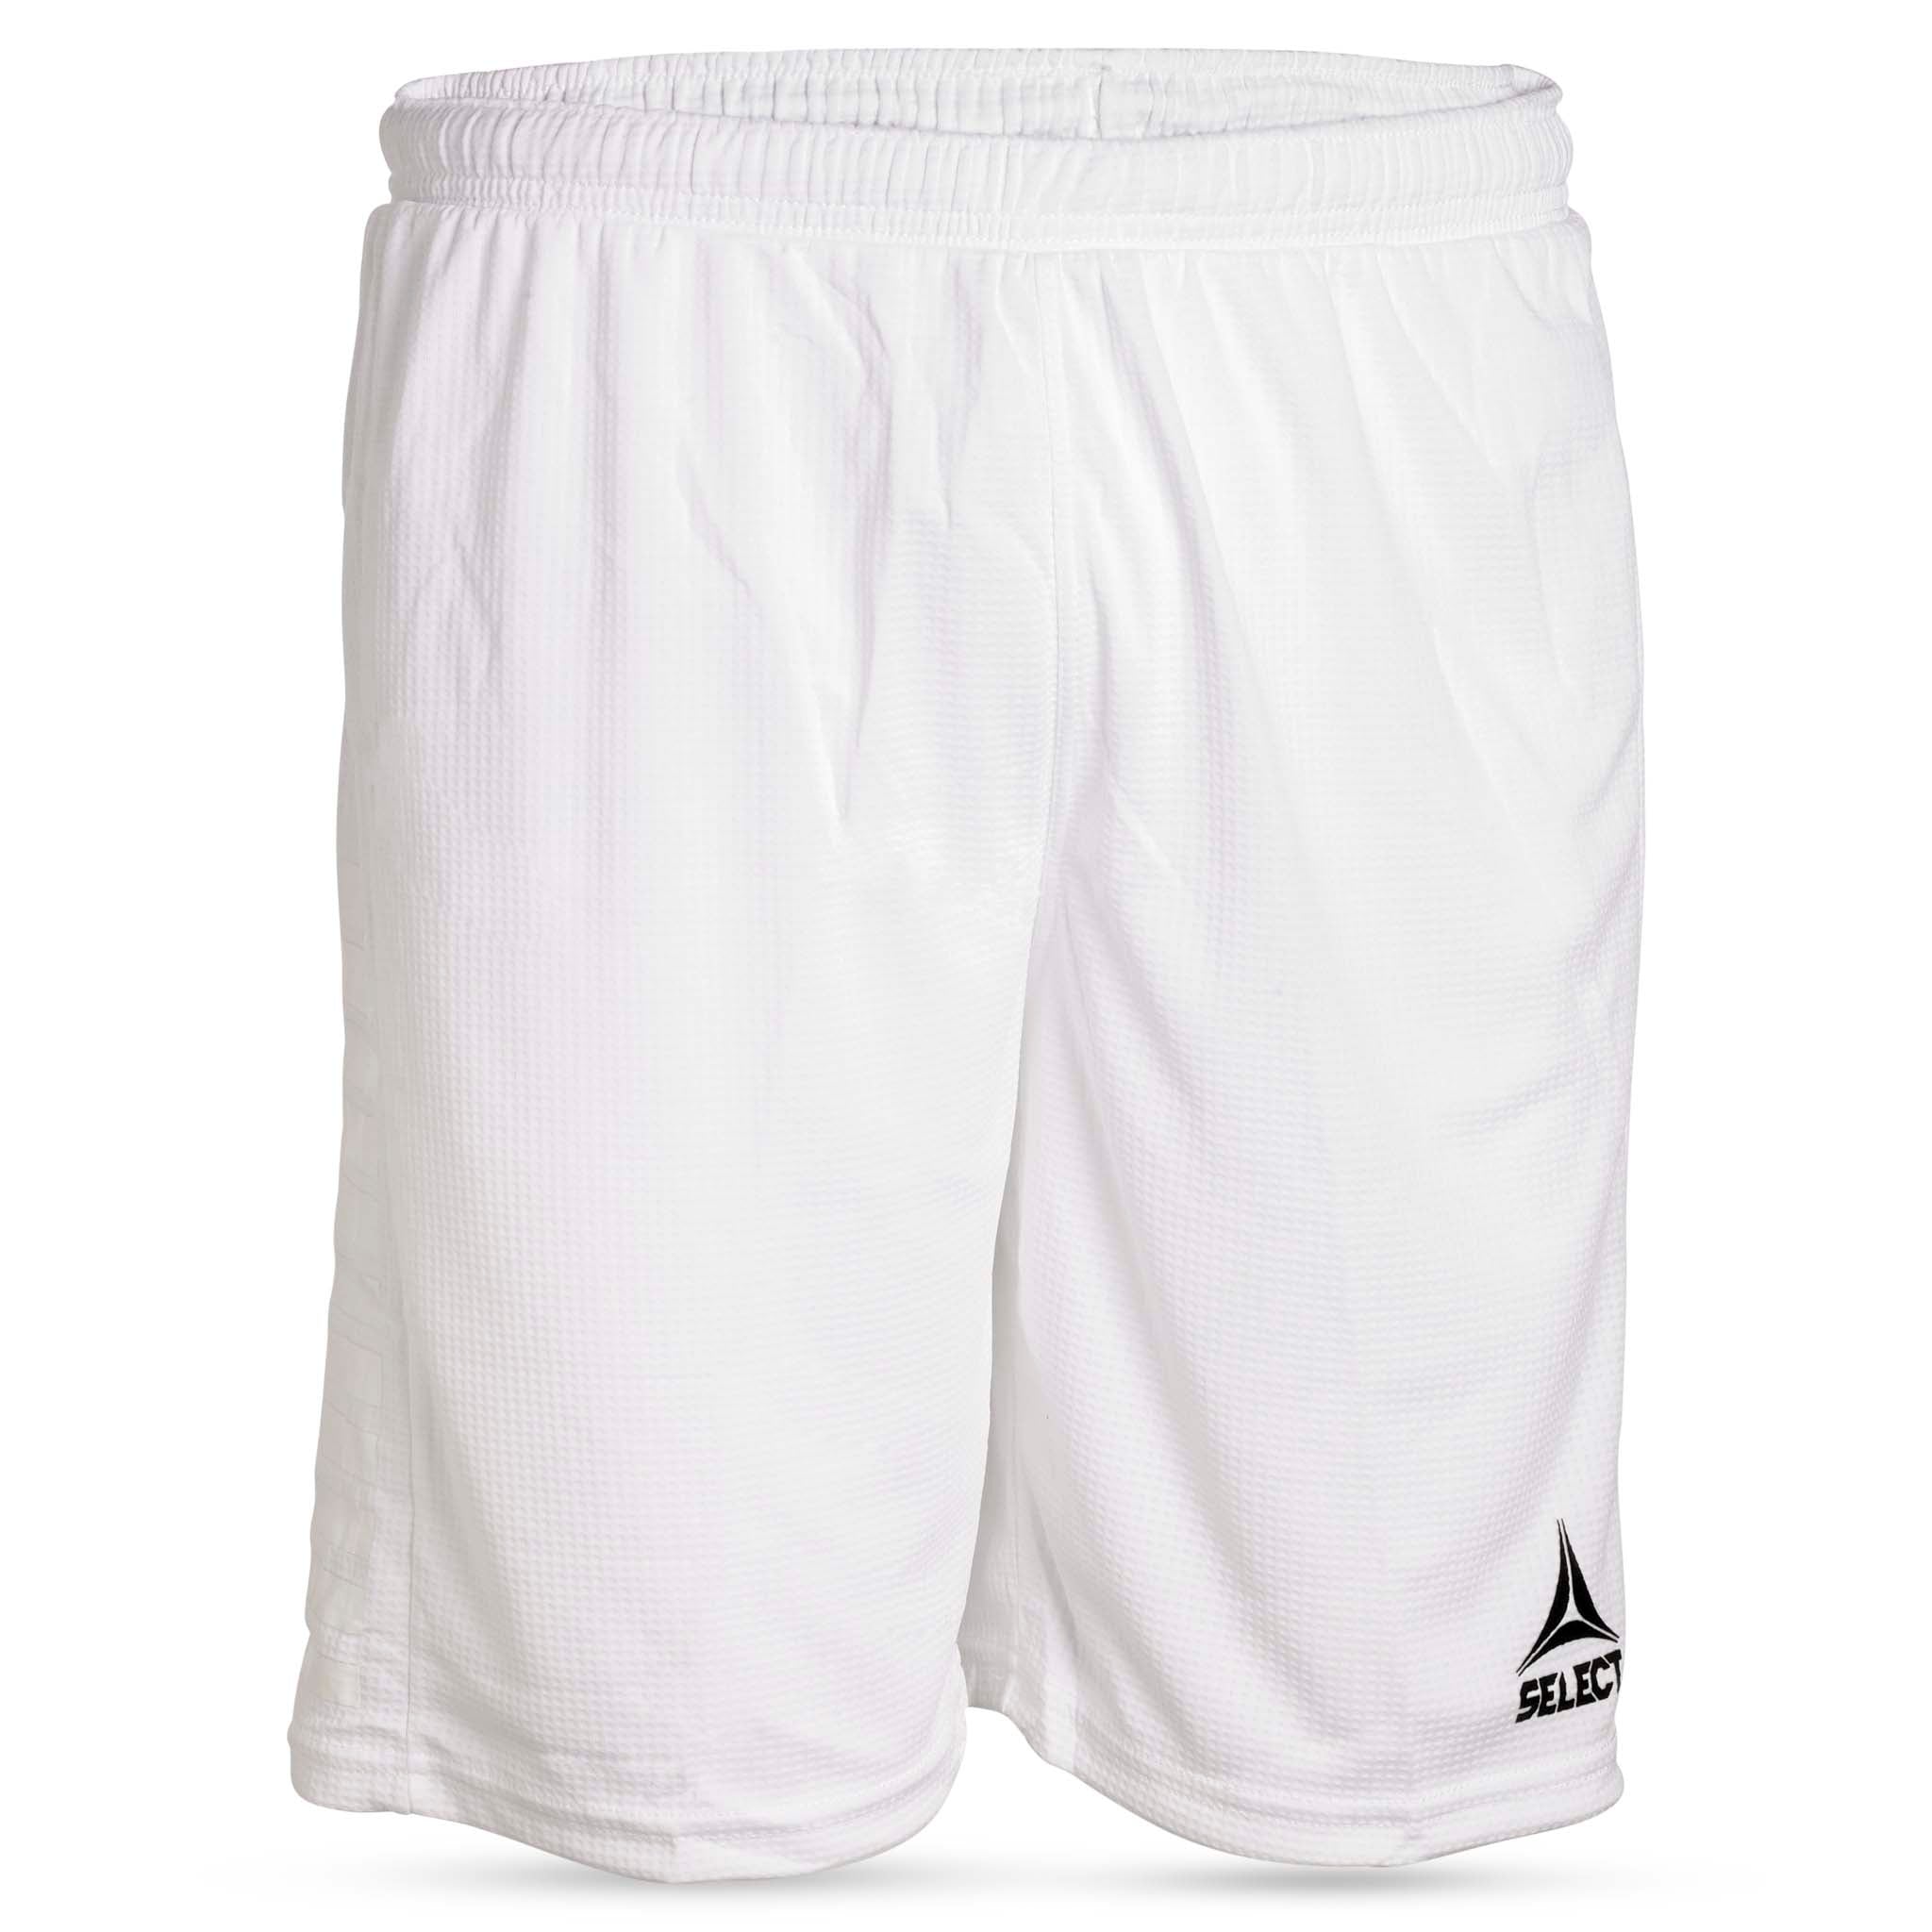 Shorts - Monaco, junior #farge_hvit